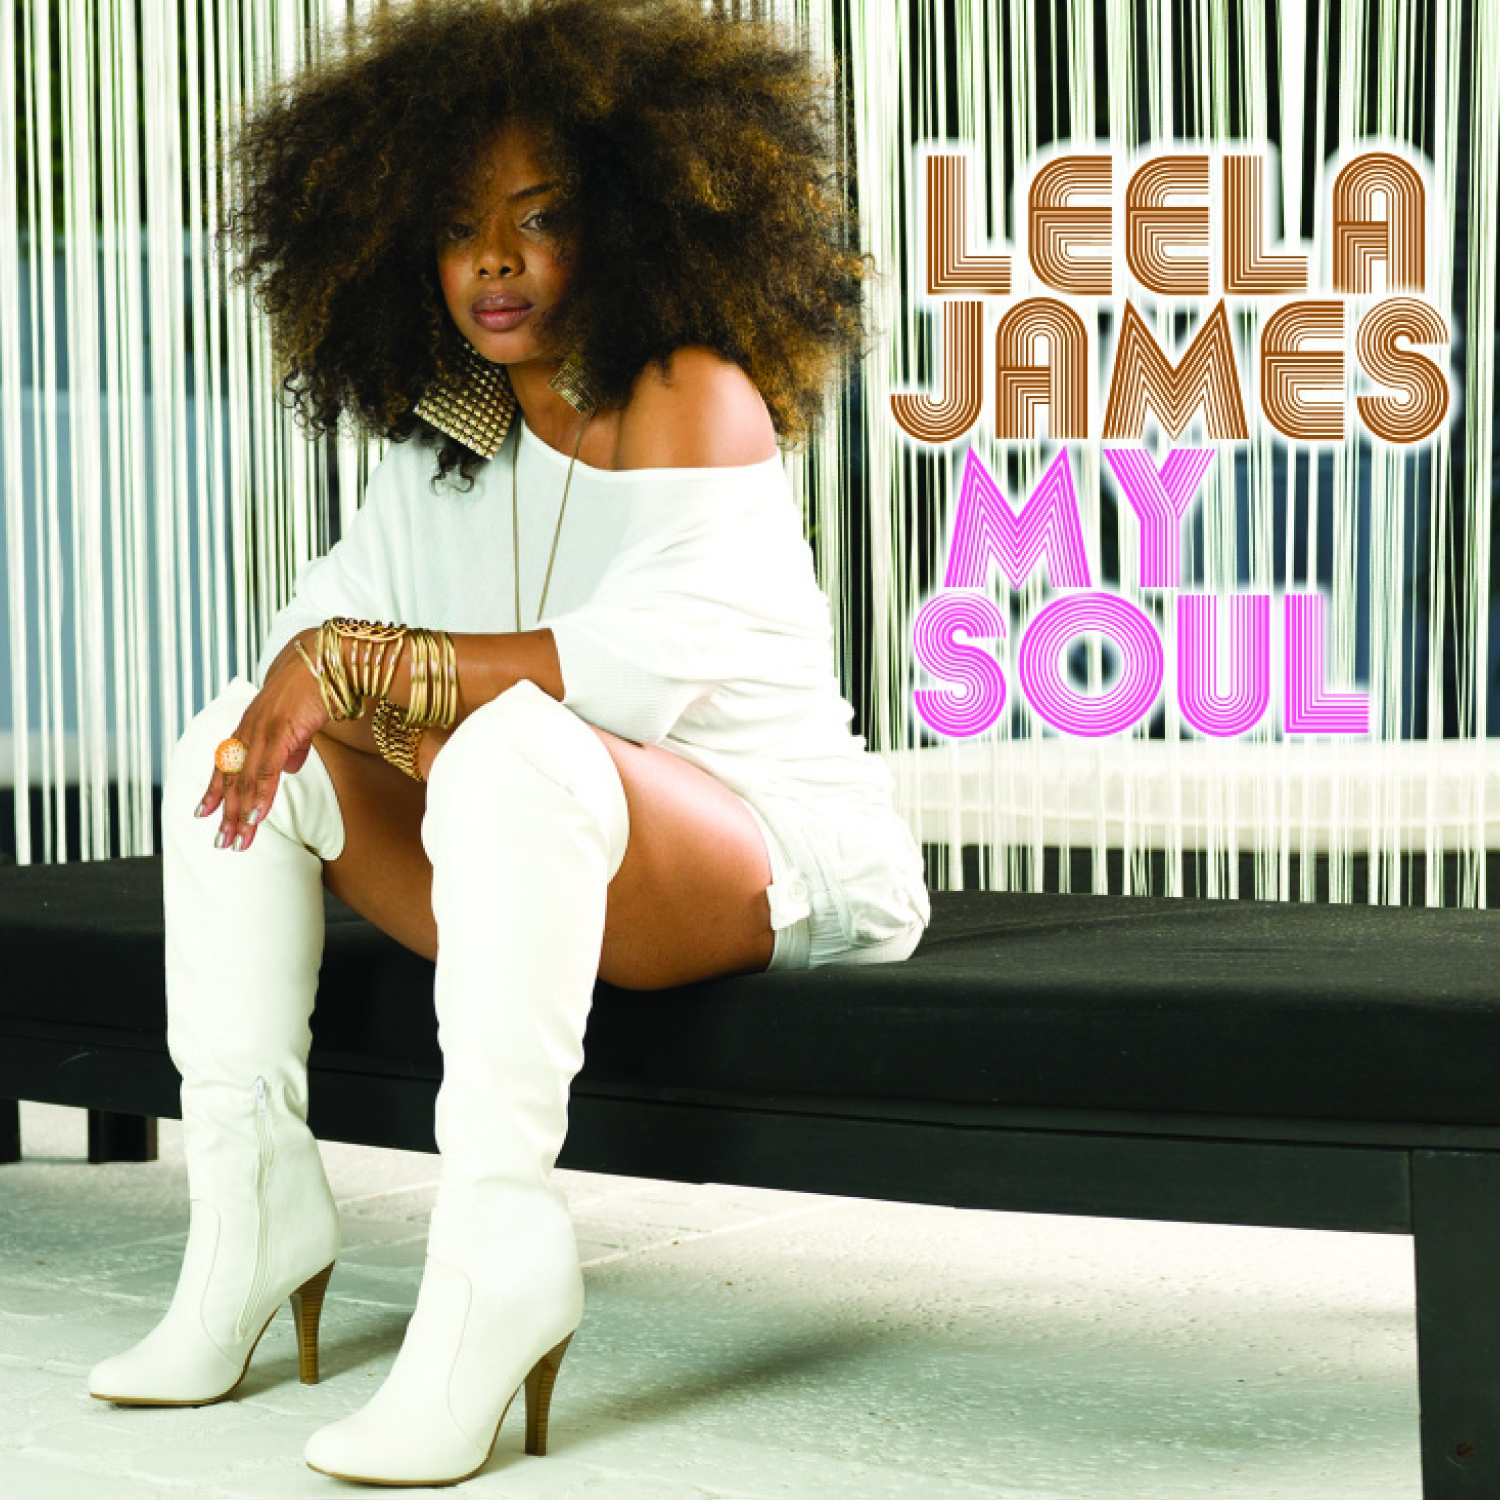 LEELA JAMES brings Soul to Stax | Soul Food1500 x 1500